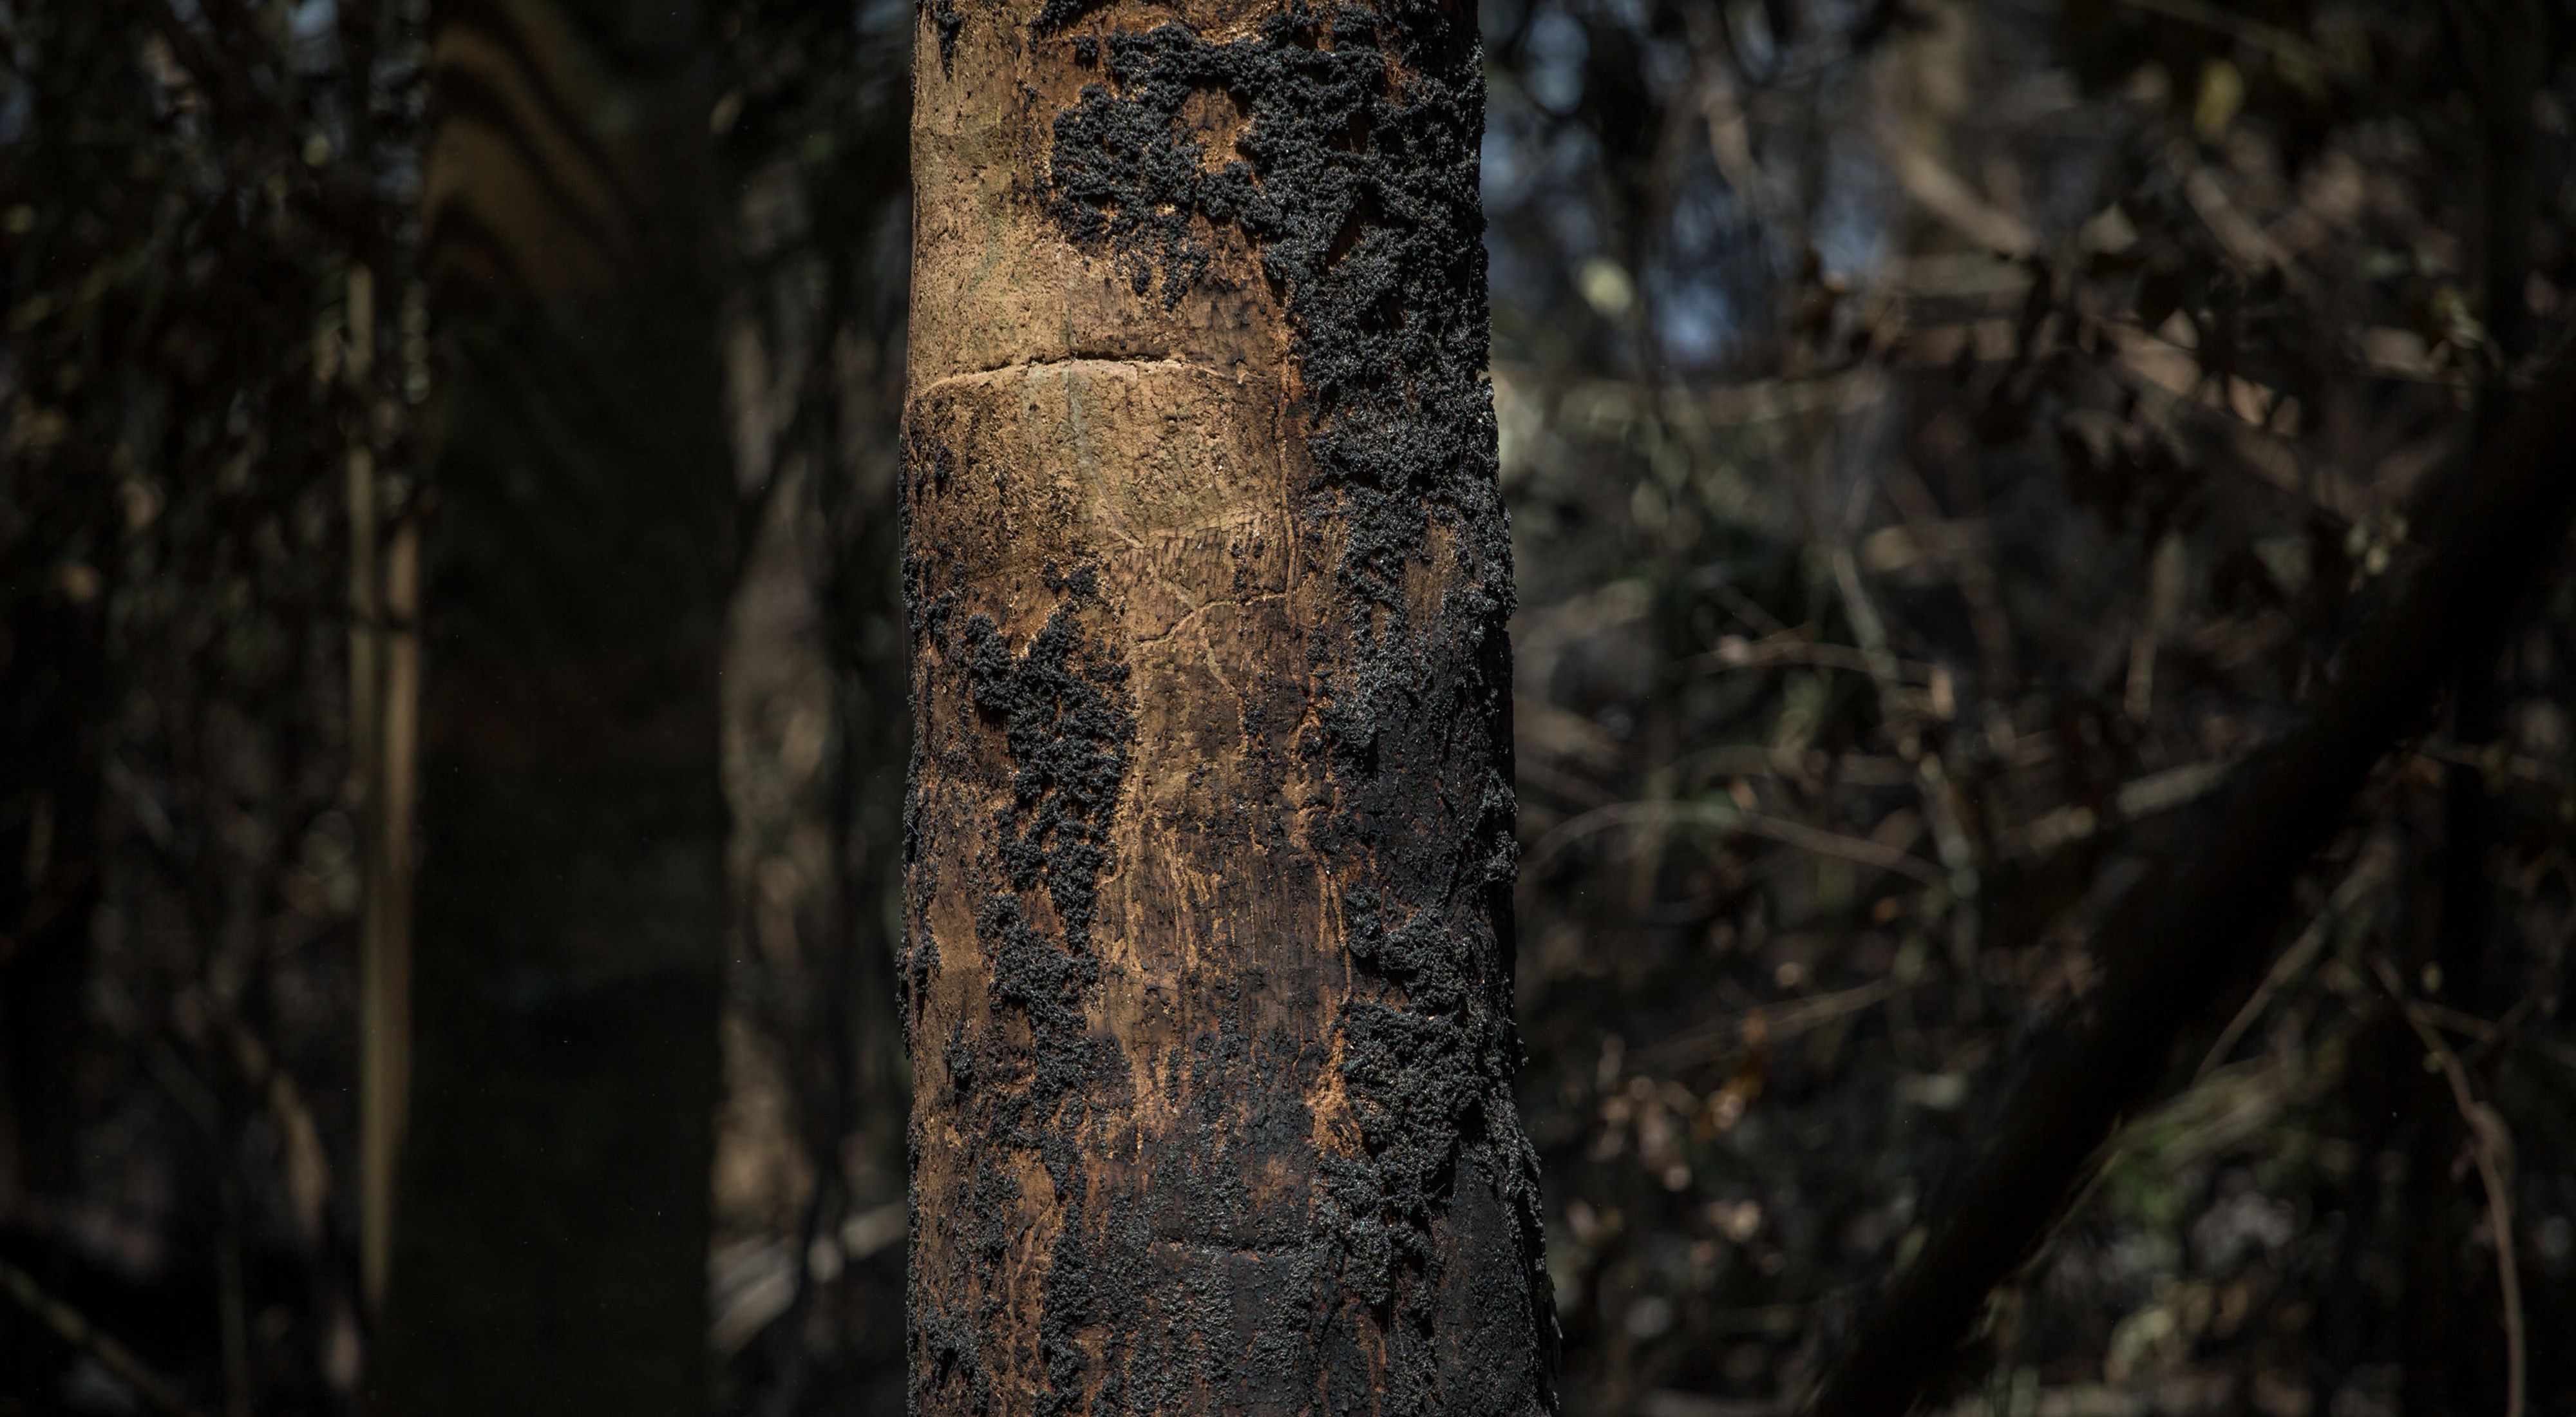 Árvore queimada após incêndio na região do Rio Tapajós, no Pará, no ano de 2017.